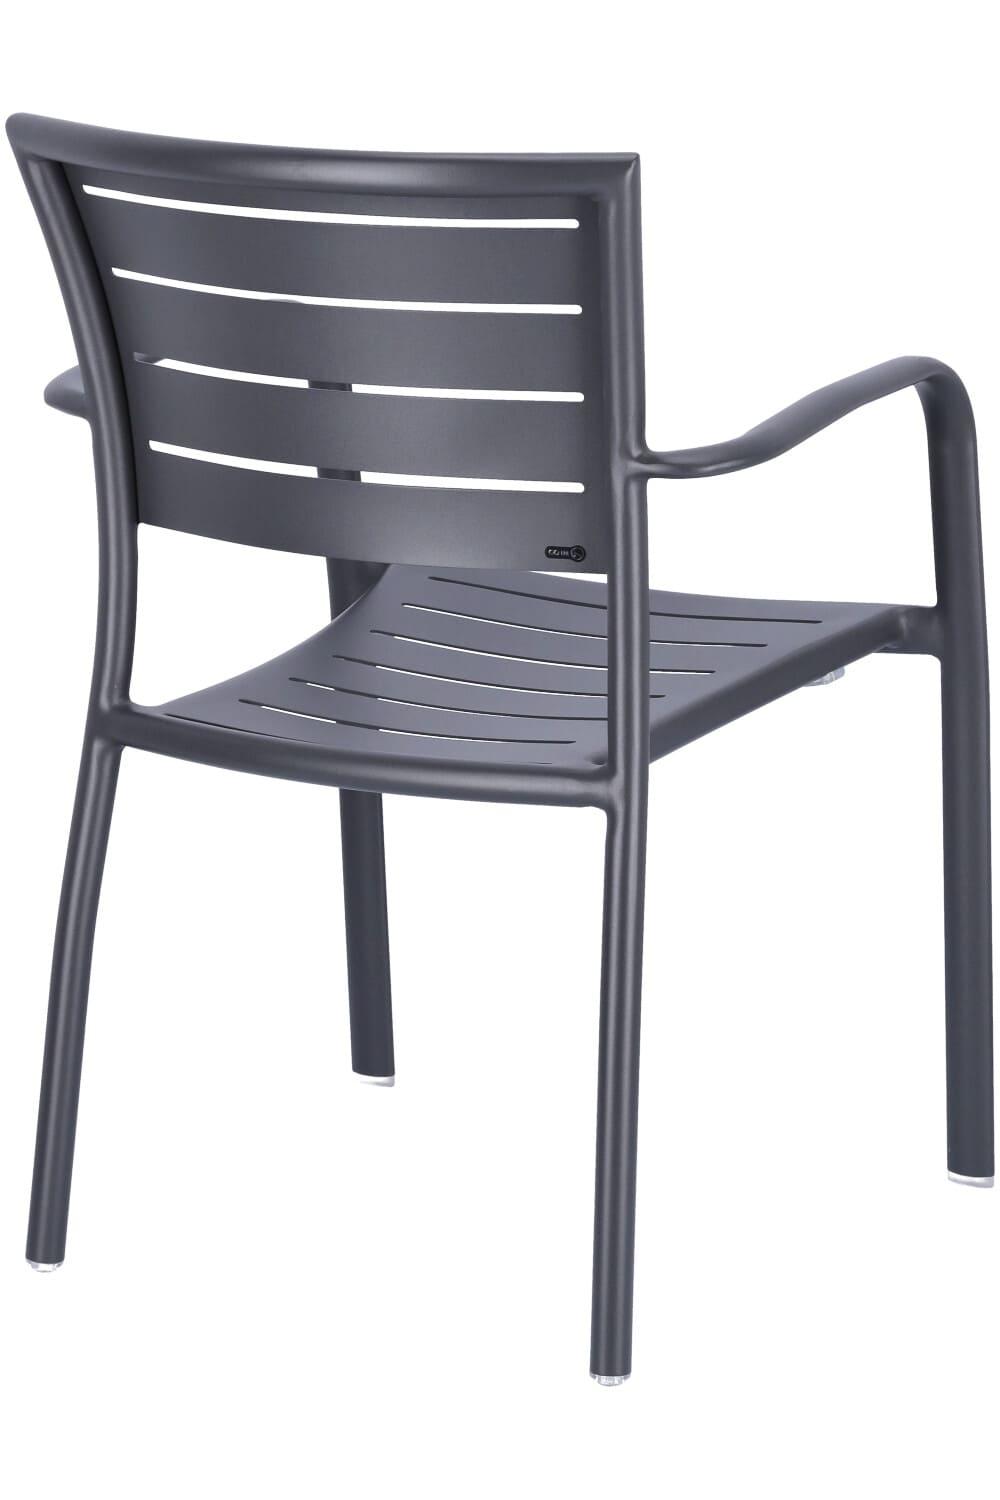 Abbildung arm chair Helke Schrägansicht